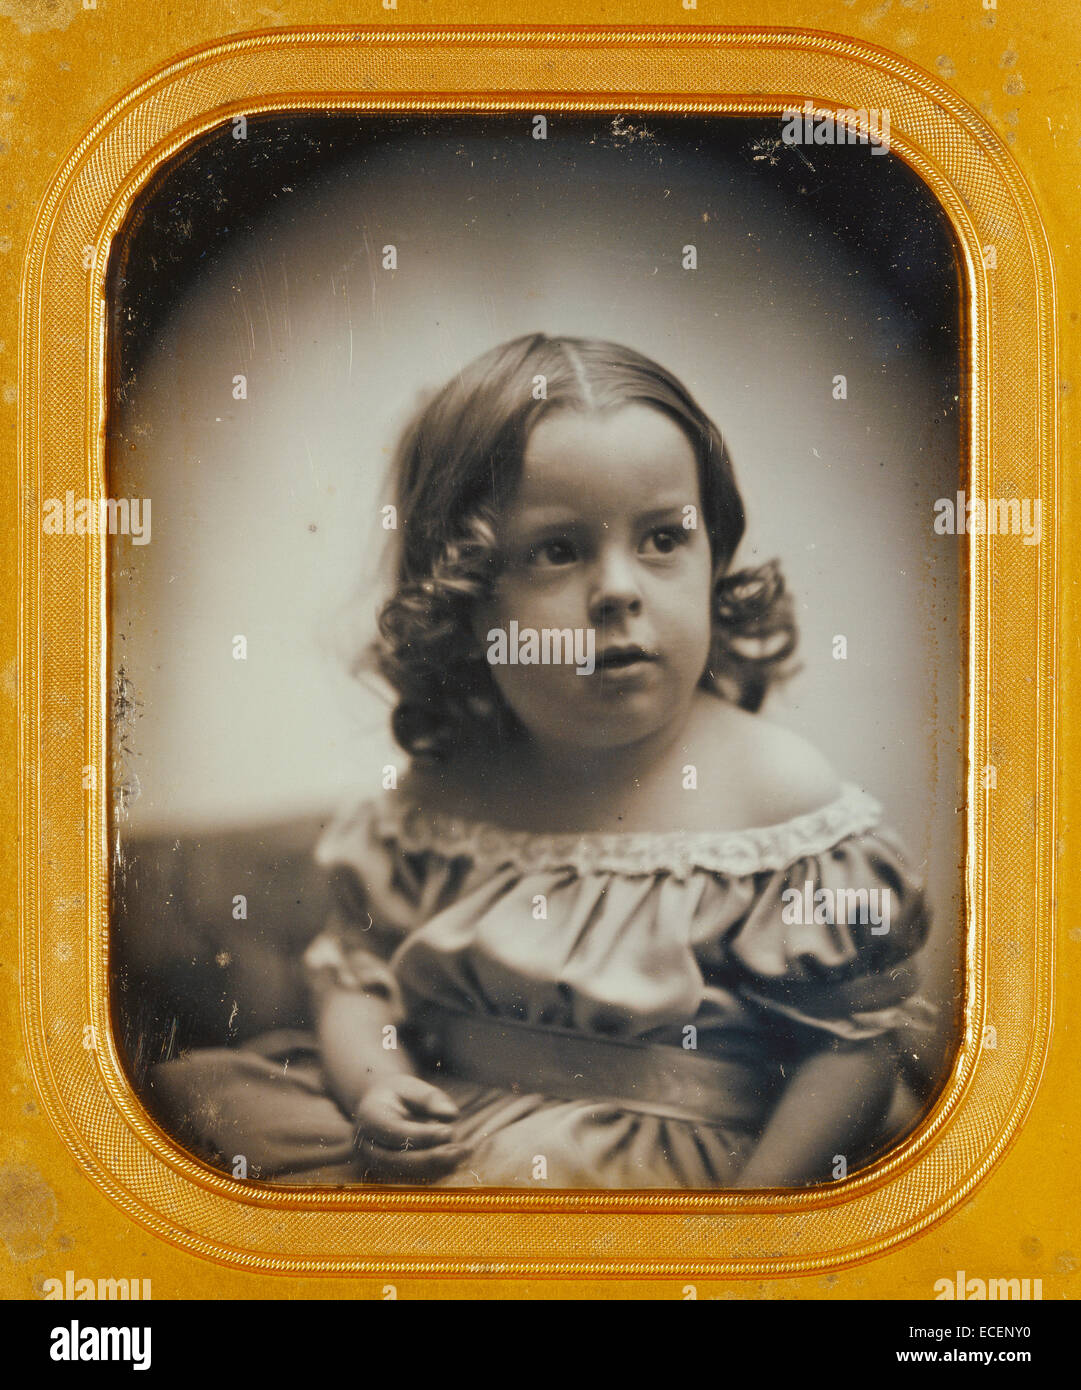 Ritratto di una giovane ragazza; Southworth & Hawes, American, attivo 1844 - 1862; circa 1852; Daguerreotype; 1/2 piastra, Immagine: 9.5 x 7.7 cm (3 3/4 x 3 1/16 in.) Foto Stock